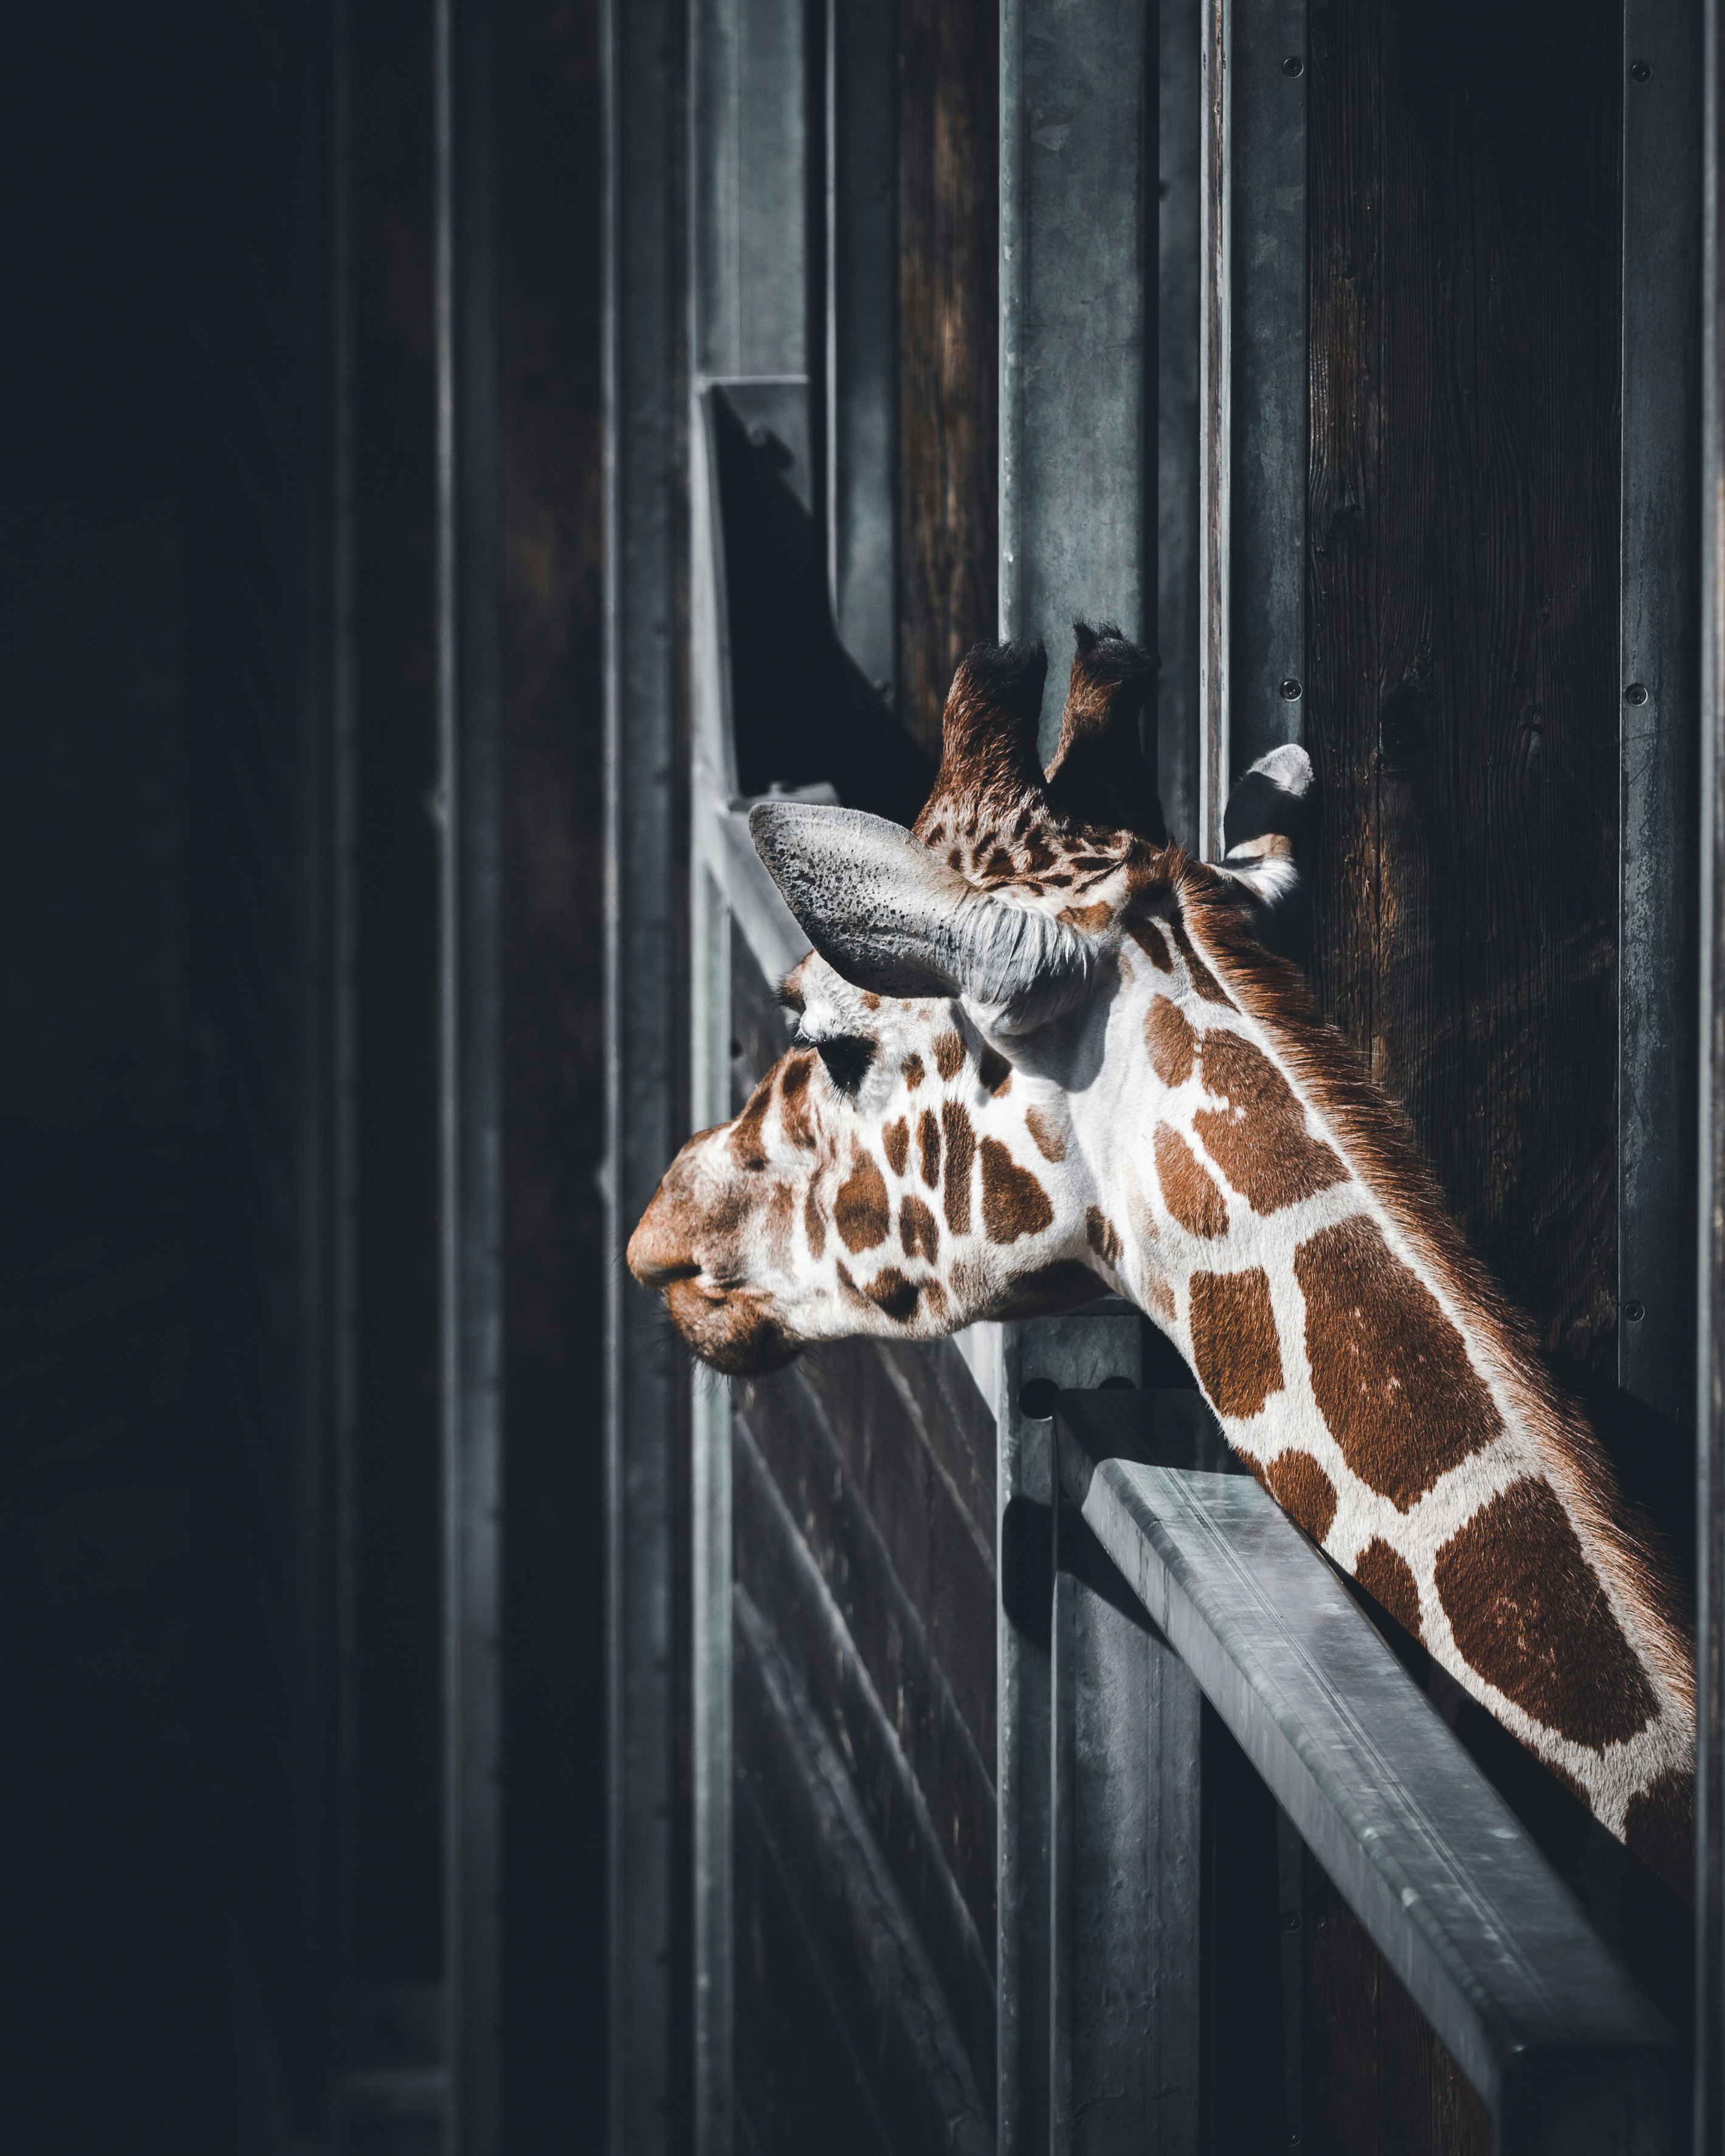 selective focus photograph of giraffe